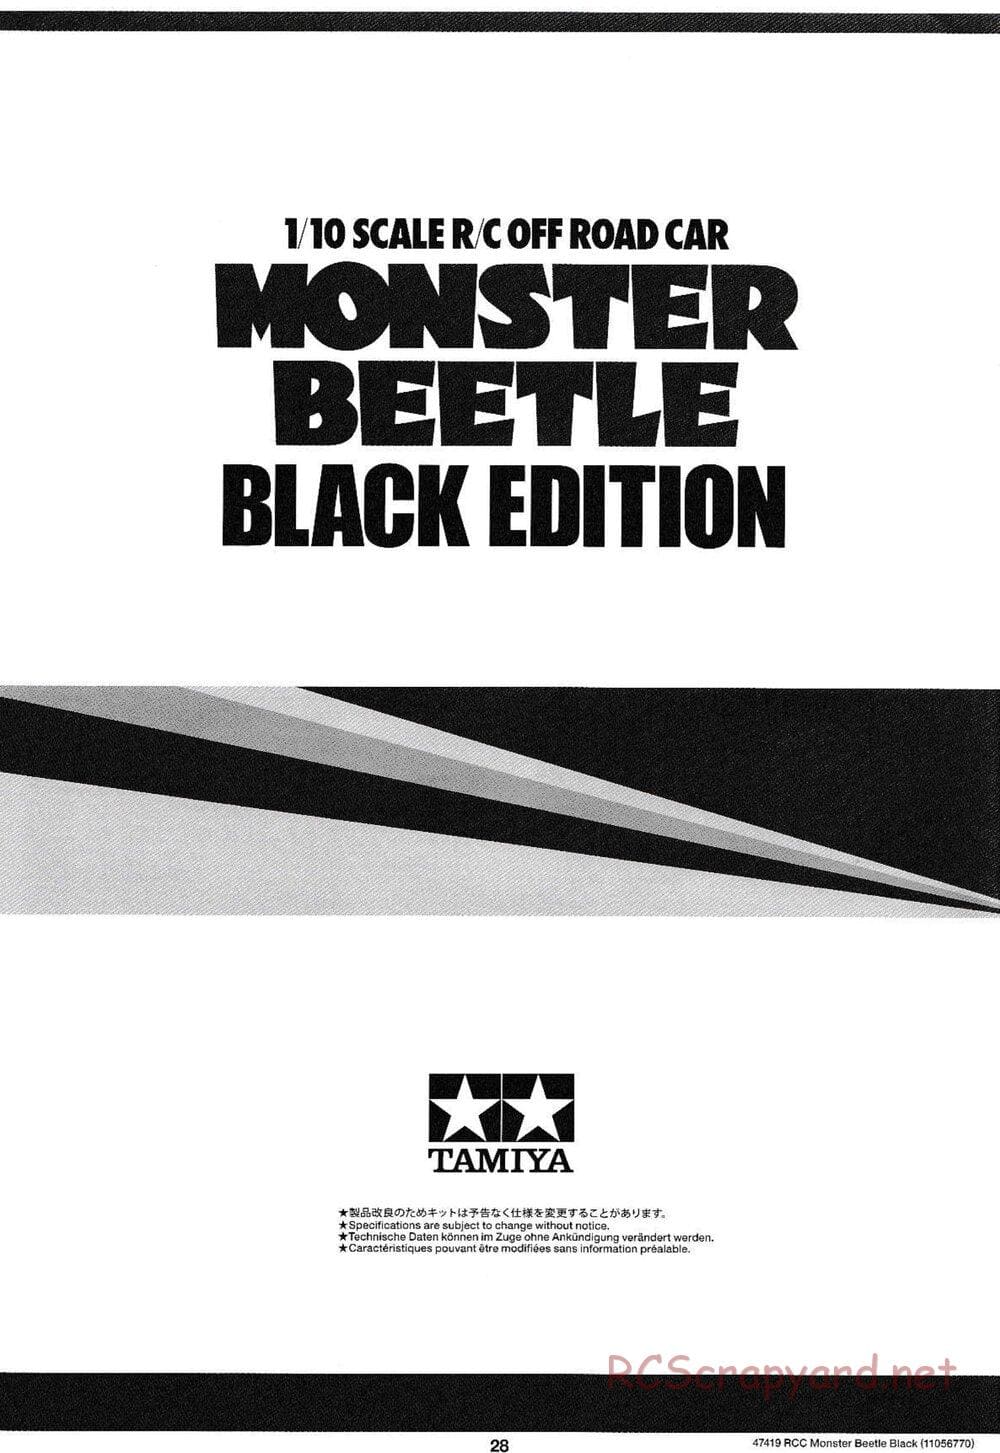 Tamiya - Monster Beetle Black Edition - ORV Chassis - Manual - Page 28